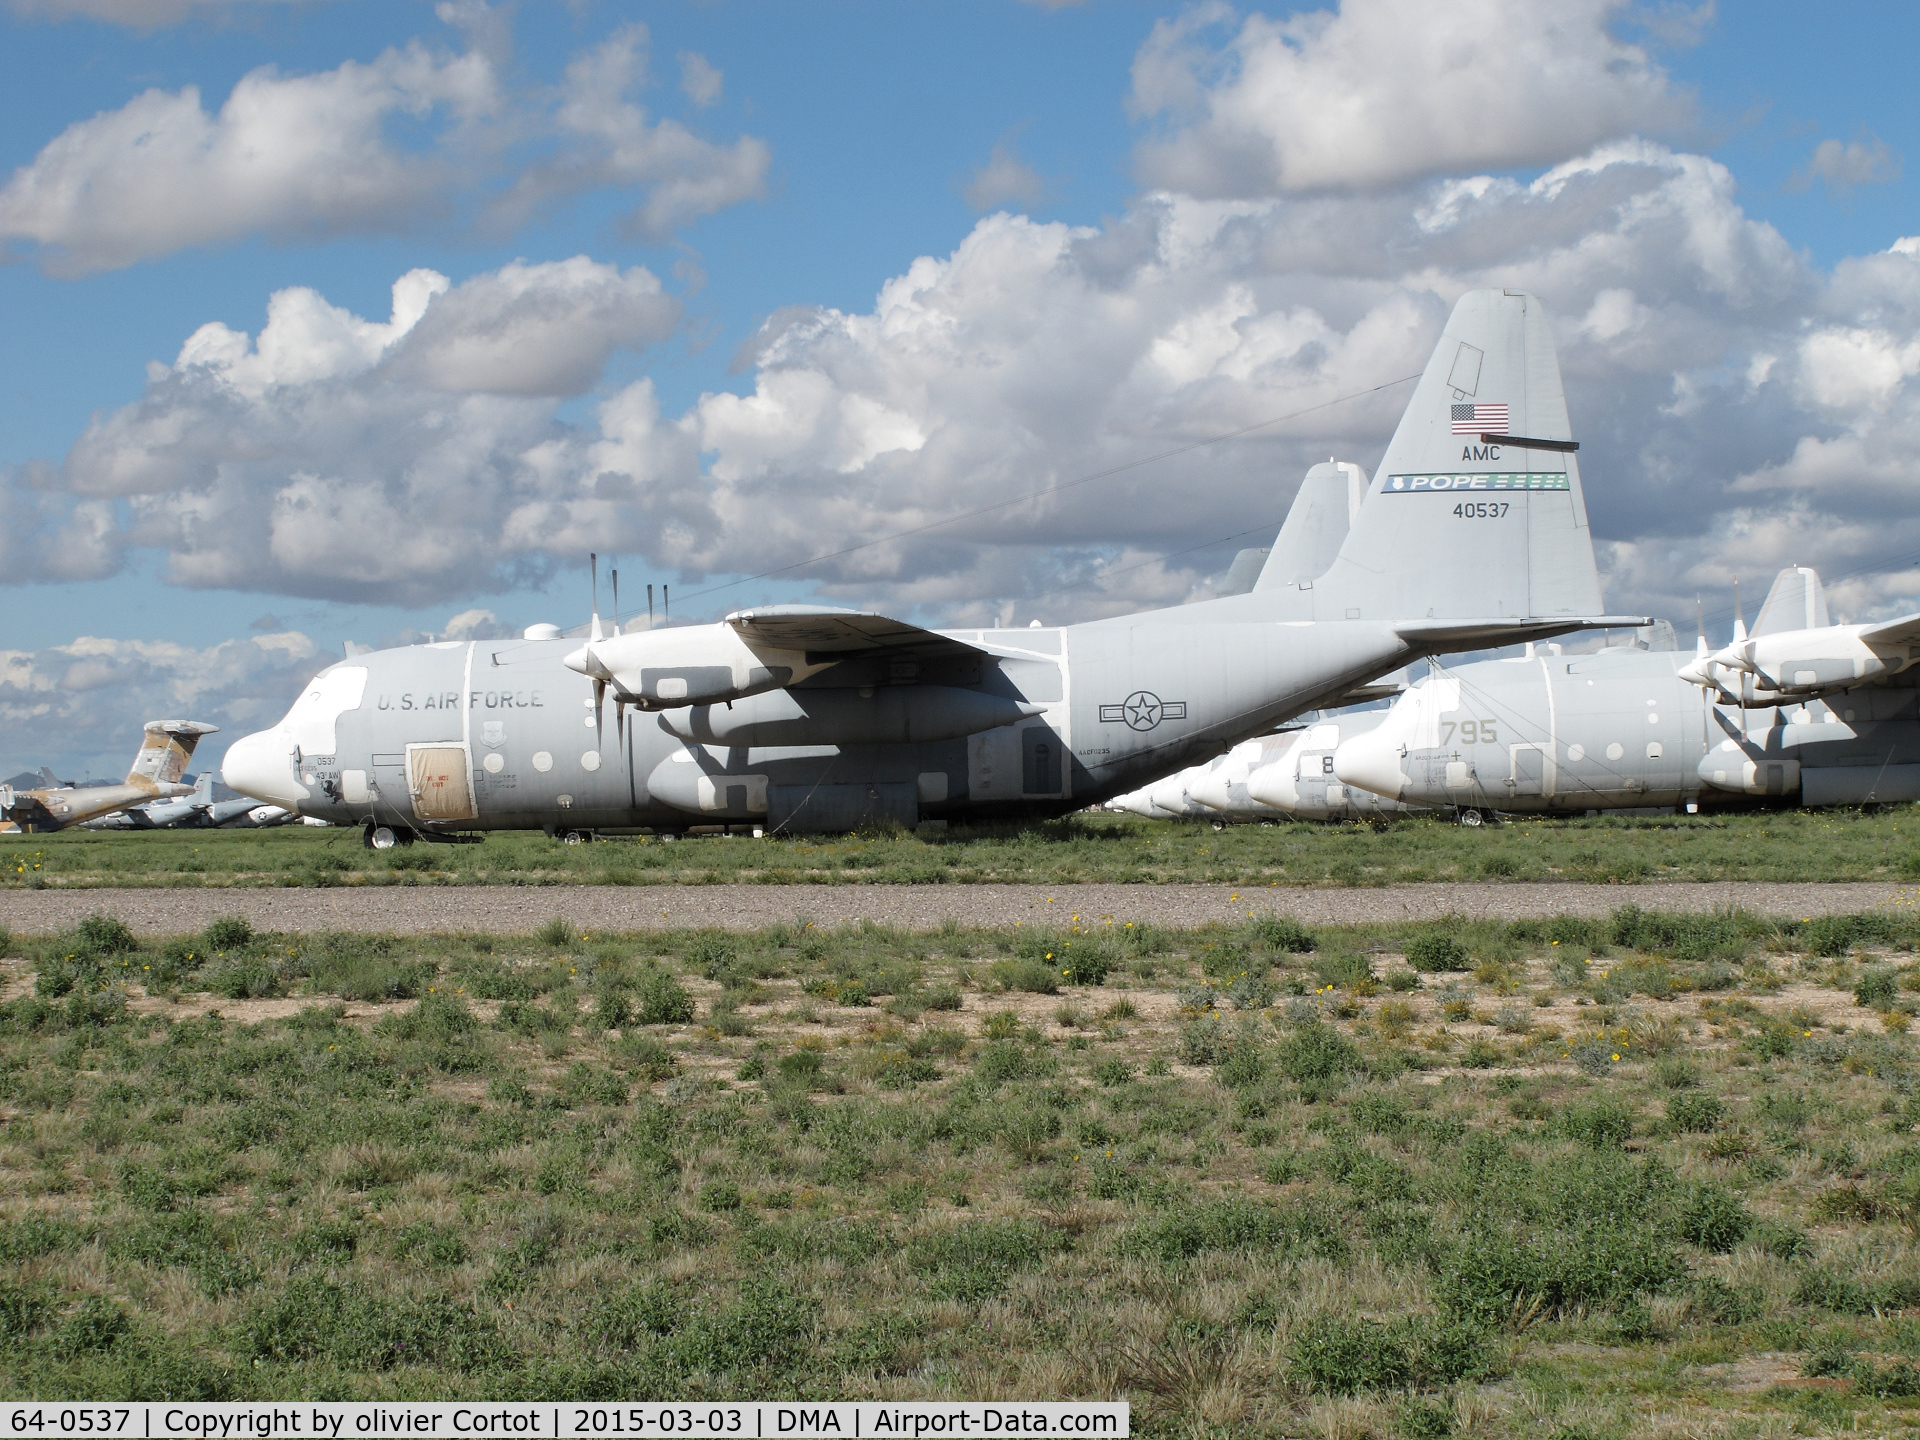 64-0537, 1964 Lockheed C-130E Hercules C/N 382-4027, boneyard 2015